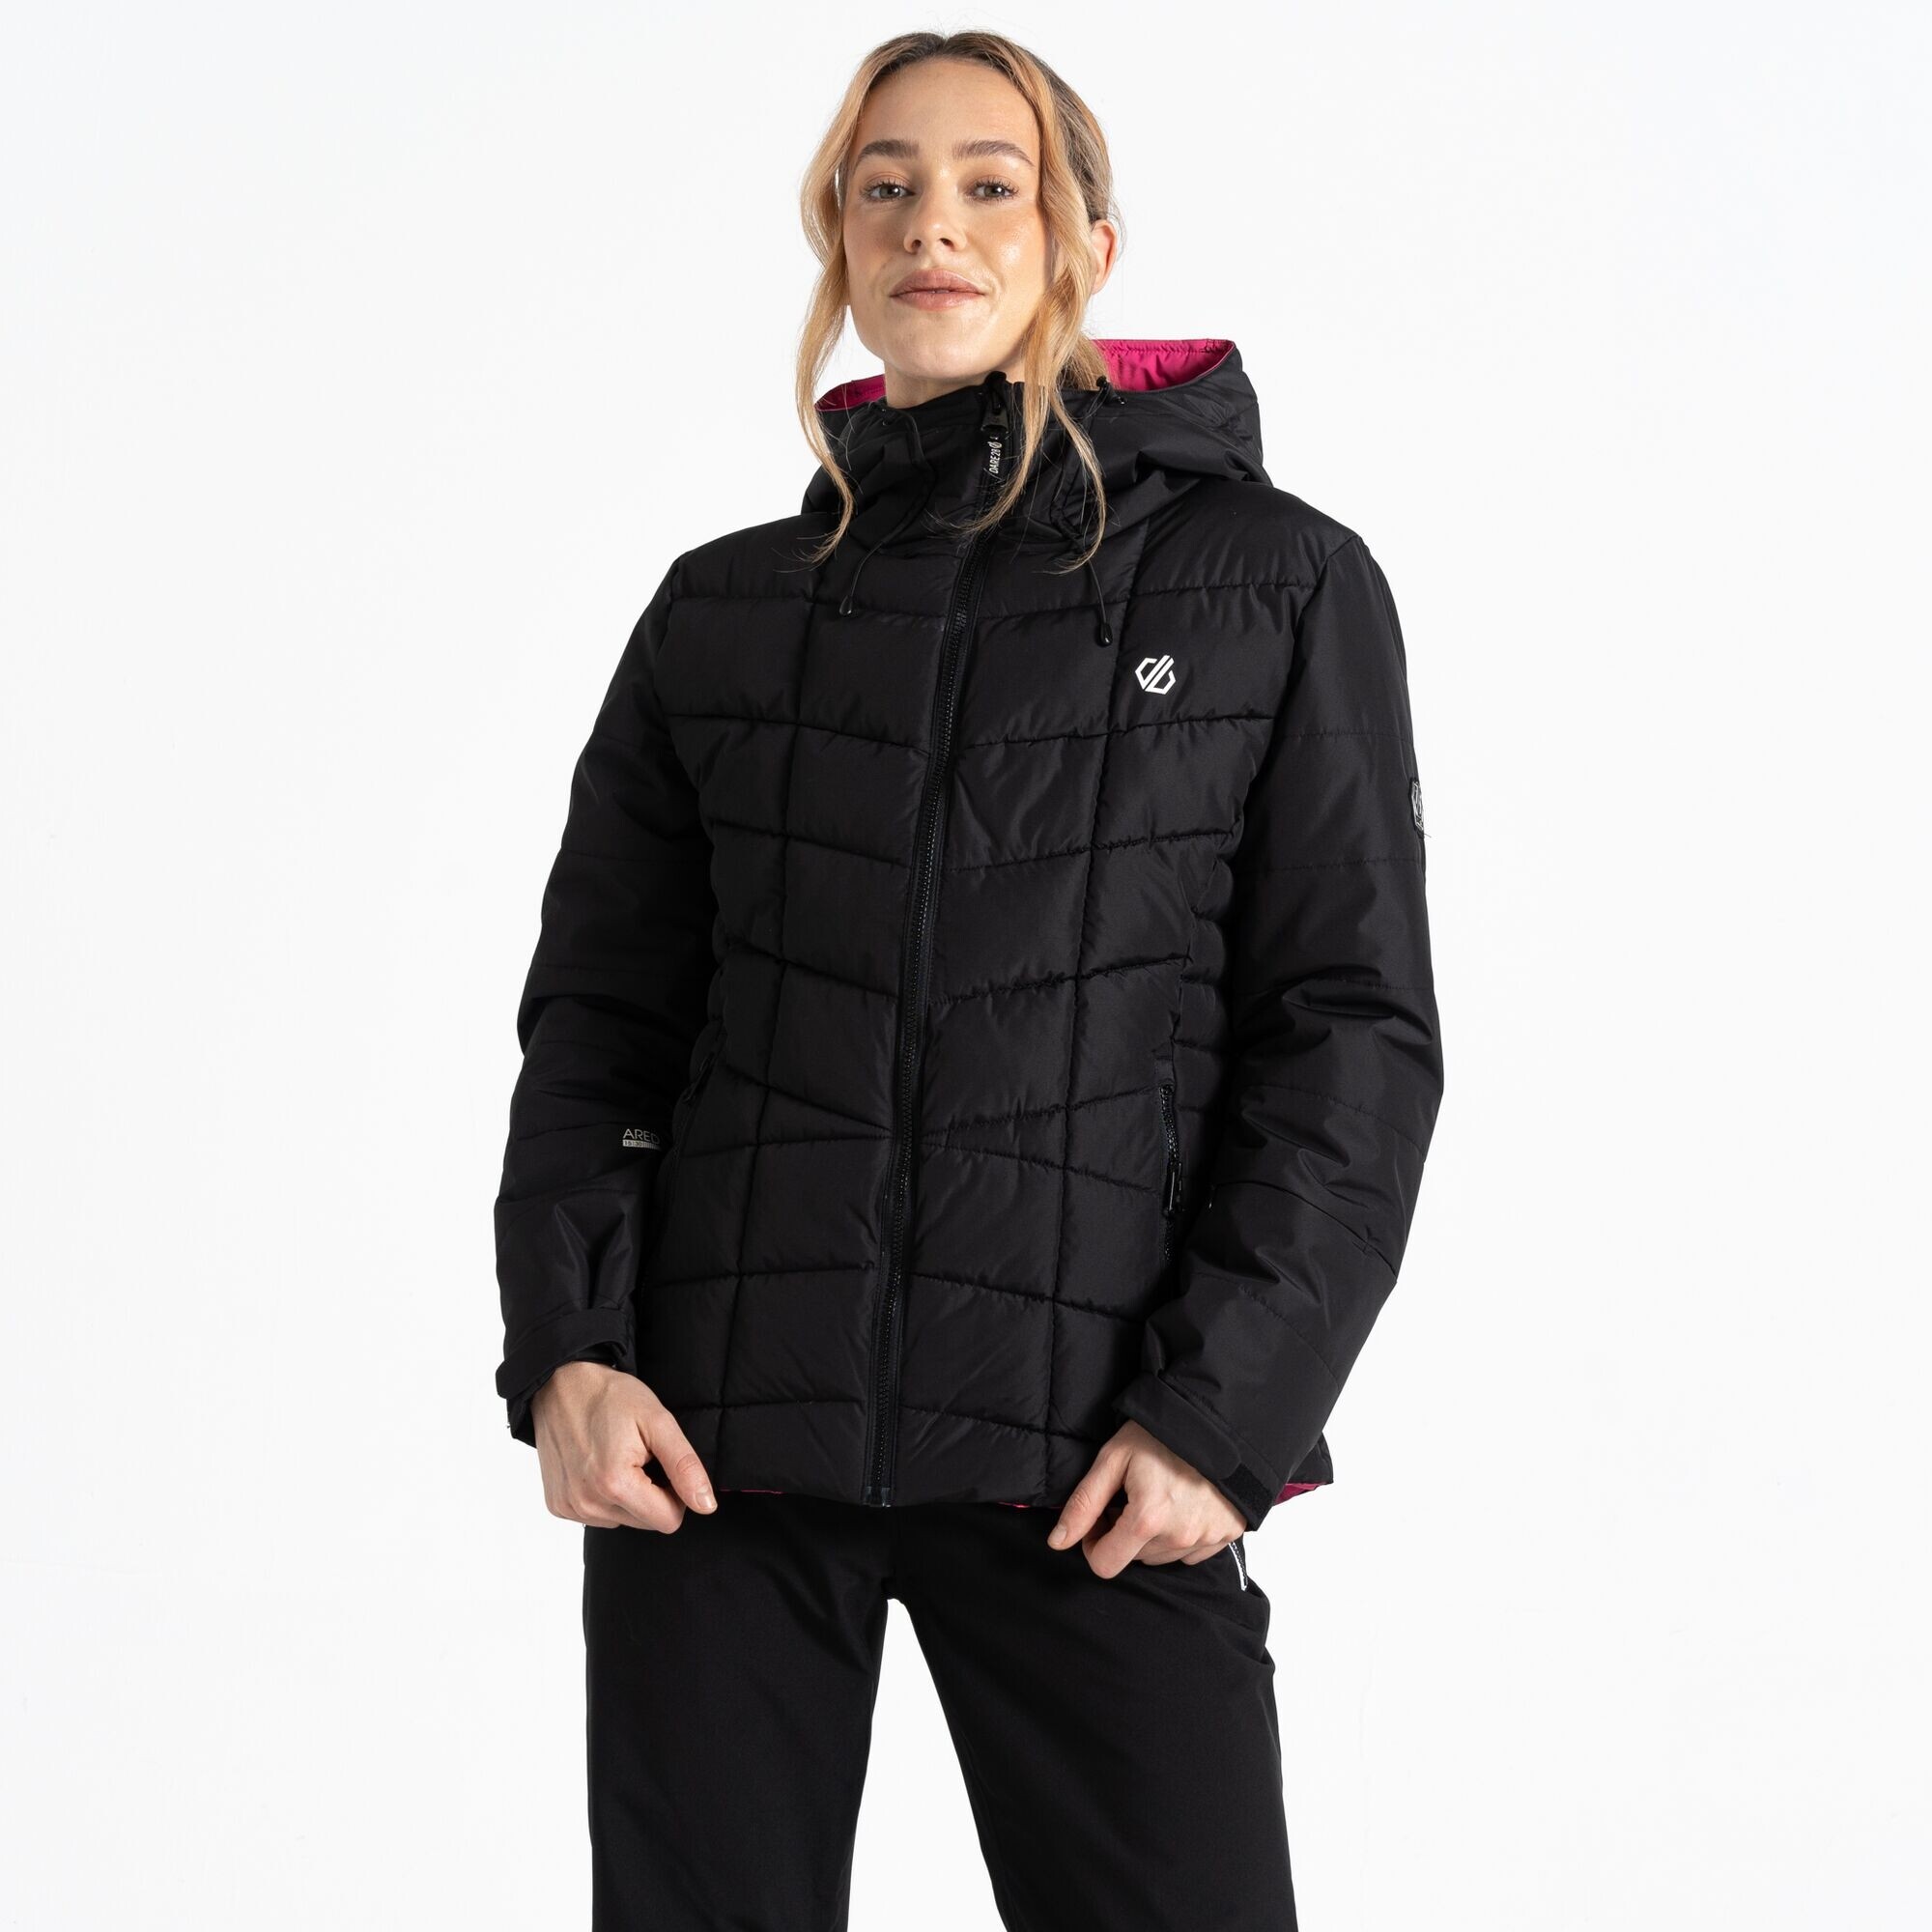 Dámská lyžařská bunda Blindside Jacket DWP569-800 černá - Dare2B 36